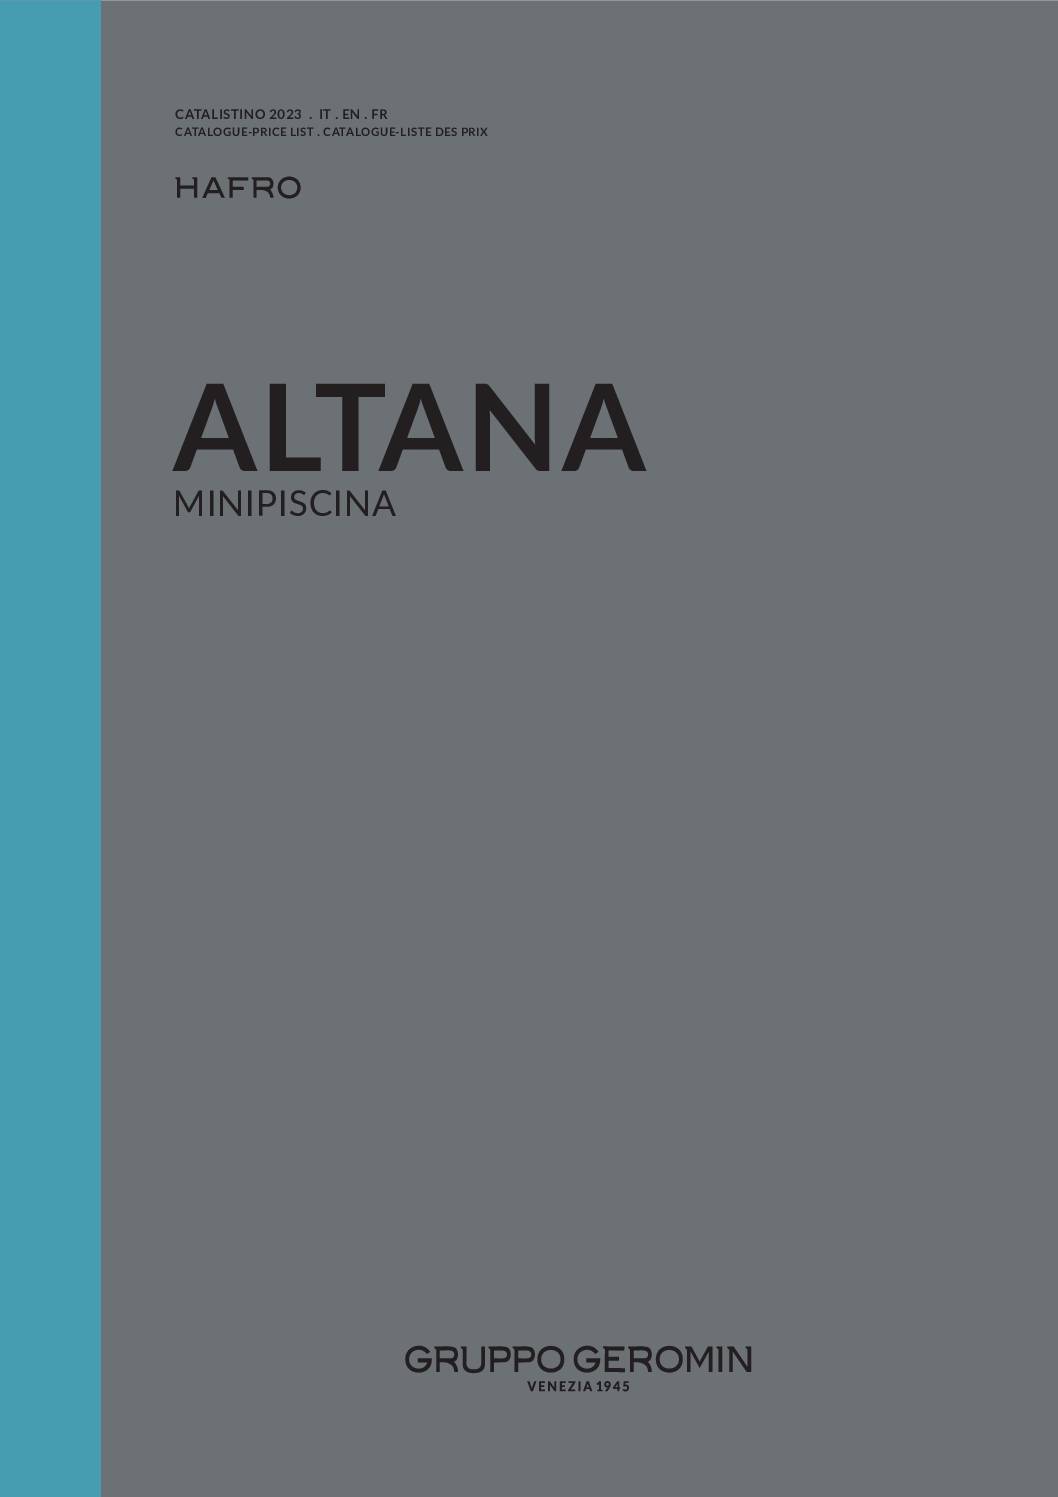 Catalogue_Spa-Altana-HafroGeromin